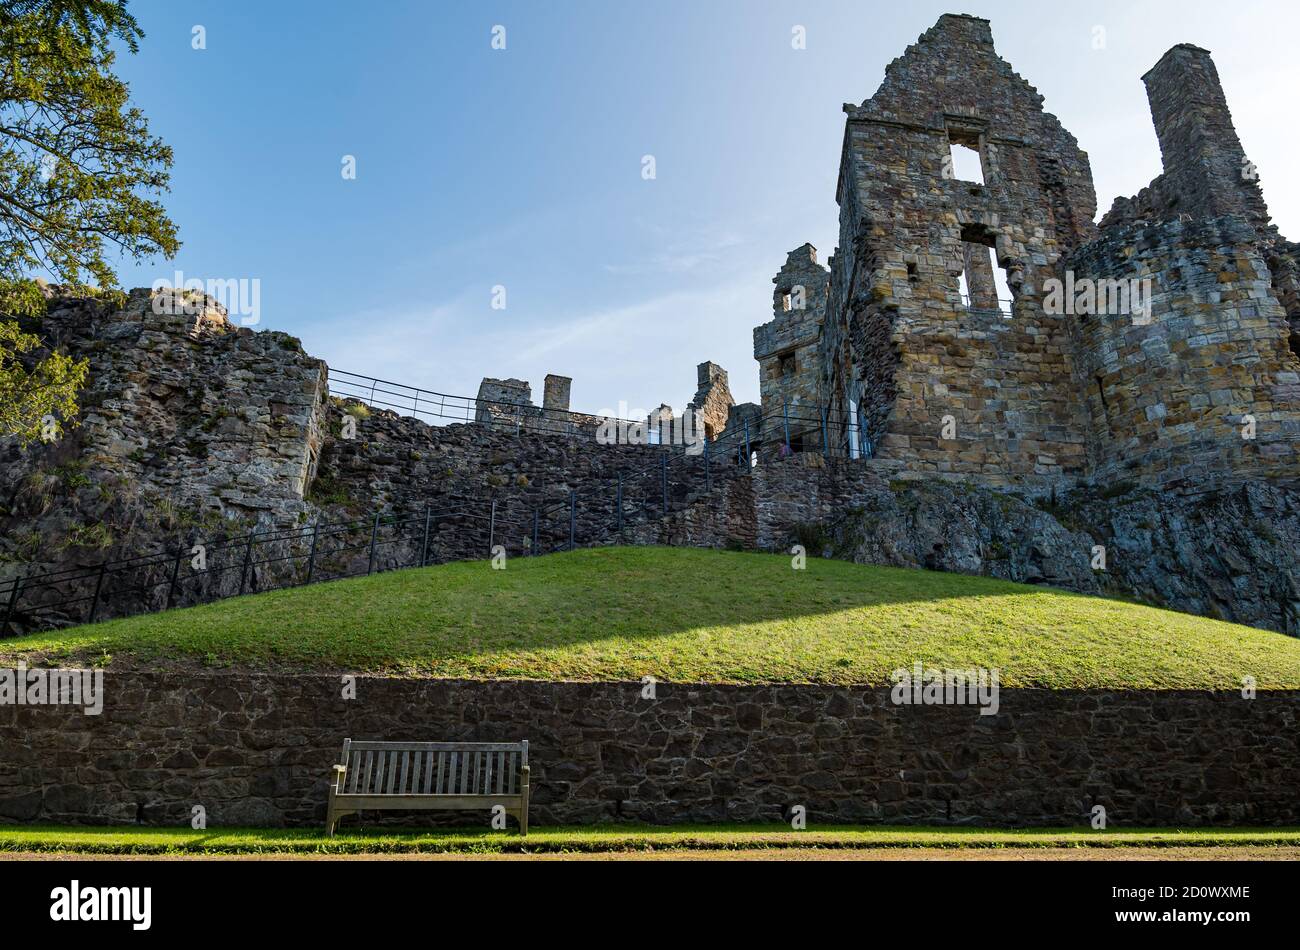 Vista de las paredes en ruinas del castillo medieval del siglo 13, el castillo de Dirleton, East Lothian, Escocia, Reino Unido Foto de stock